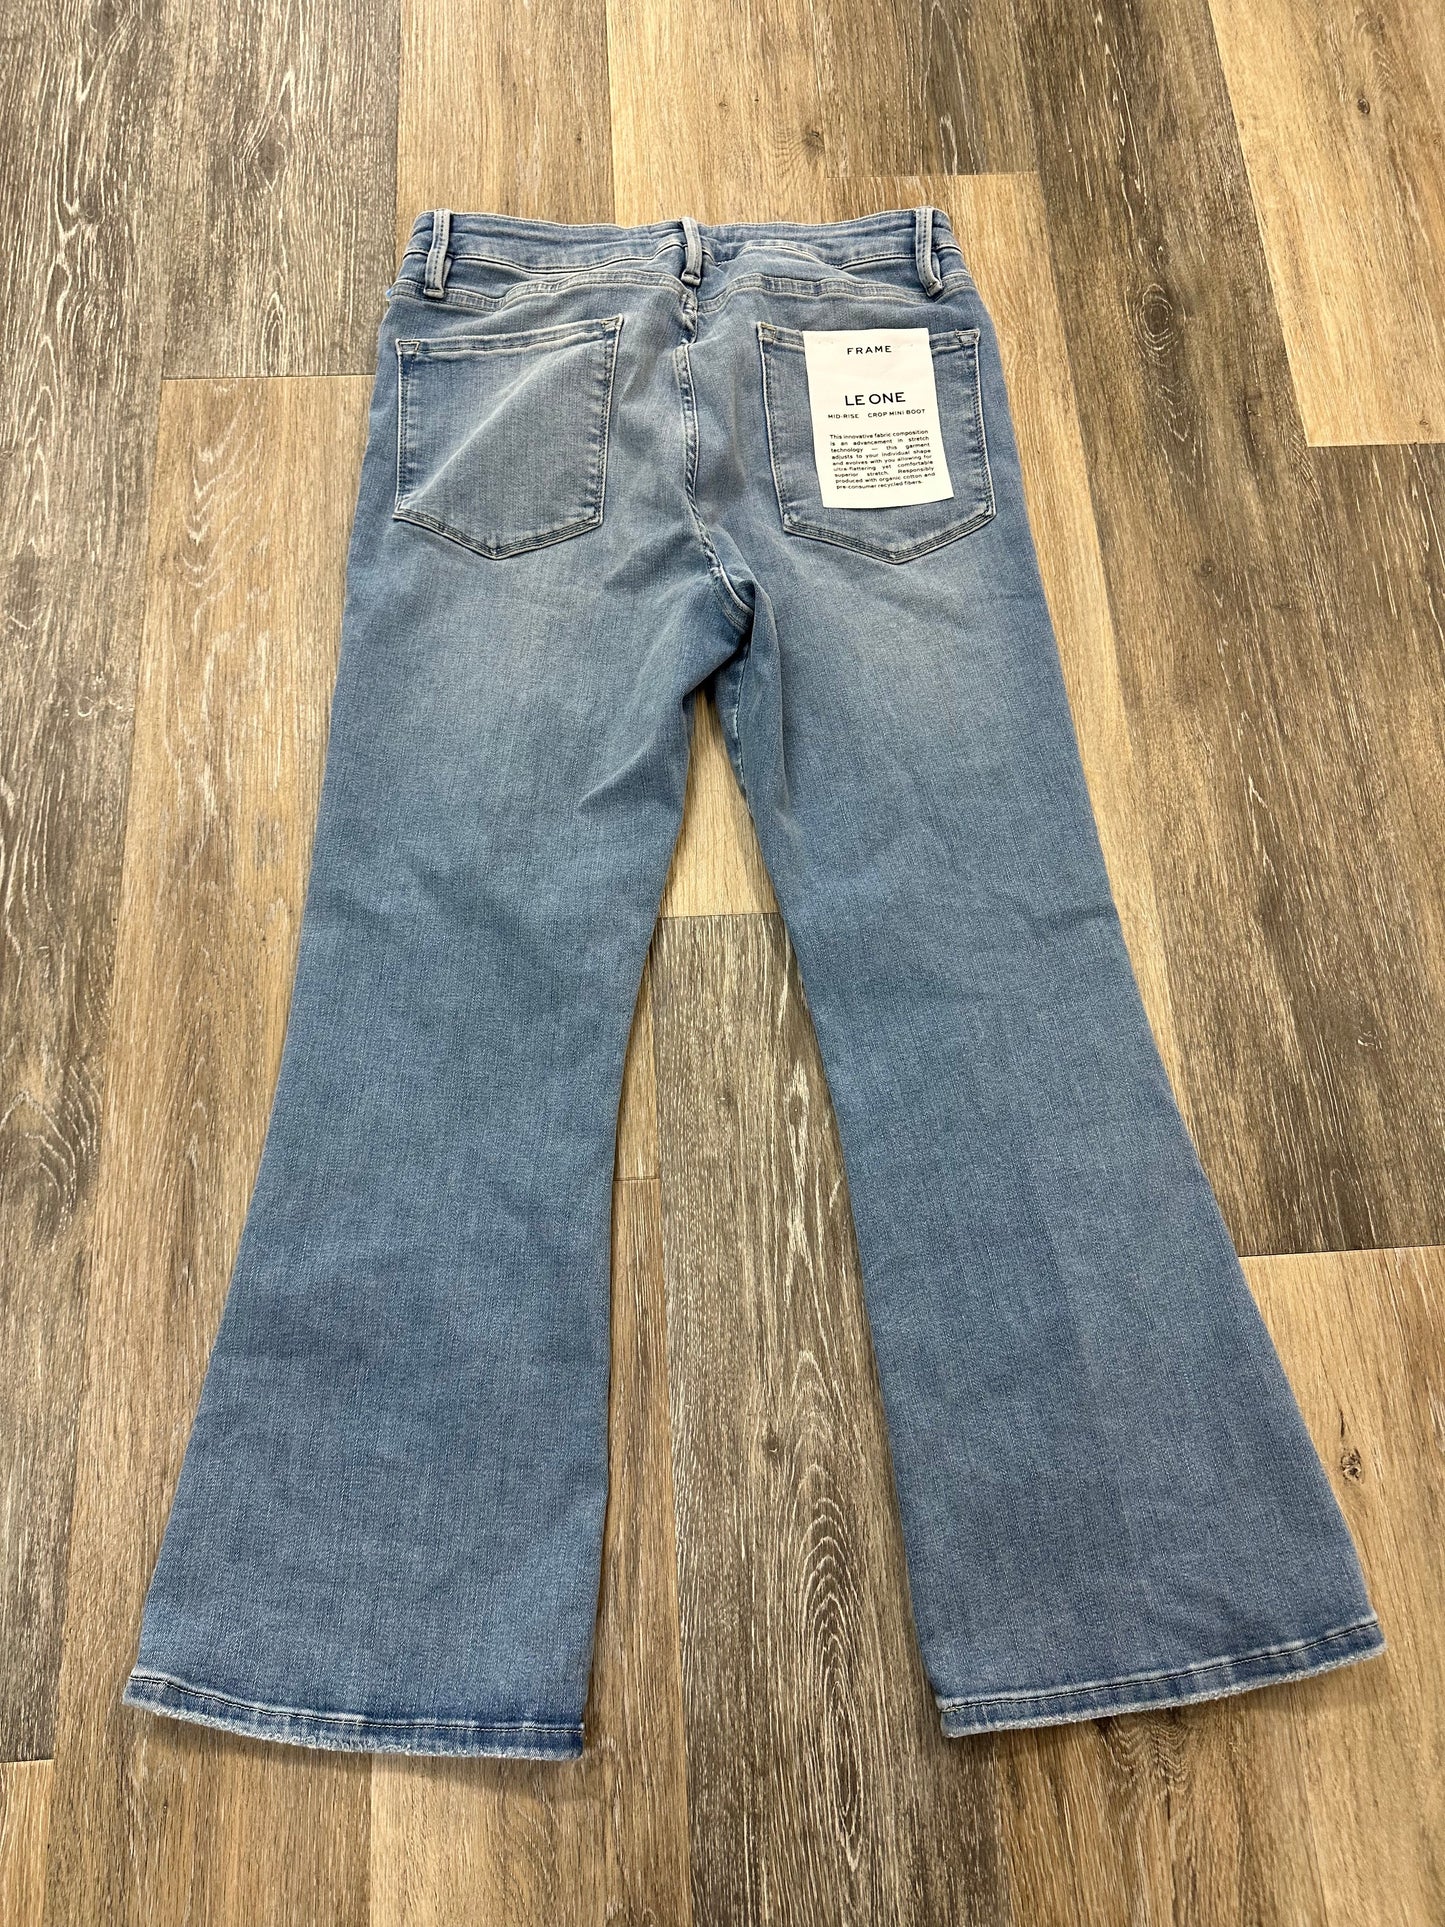 Blue Denim Jeans Designer Frame, Size 2/26